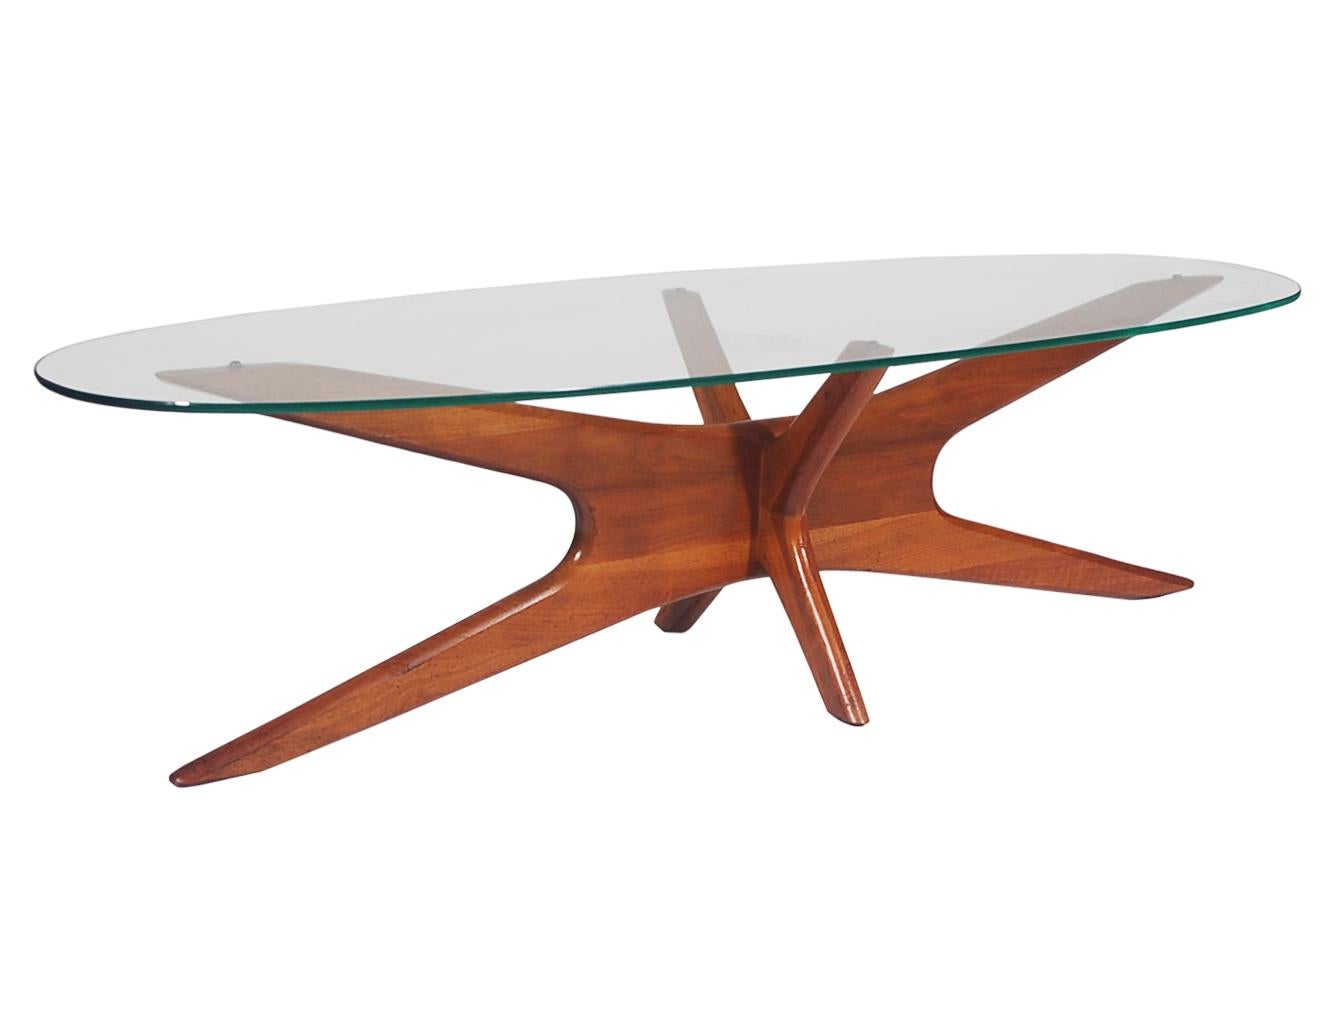 Un design classique par un designer et fabricant de meubles américain classique:: Adrian Pearsall. Cette table présente un plateau en verre ovale allongé et une base en noyer massif sculpté. Très bien entretenu au fil des ans.